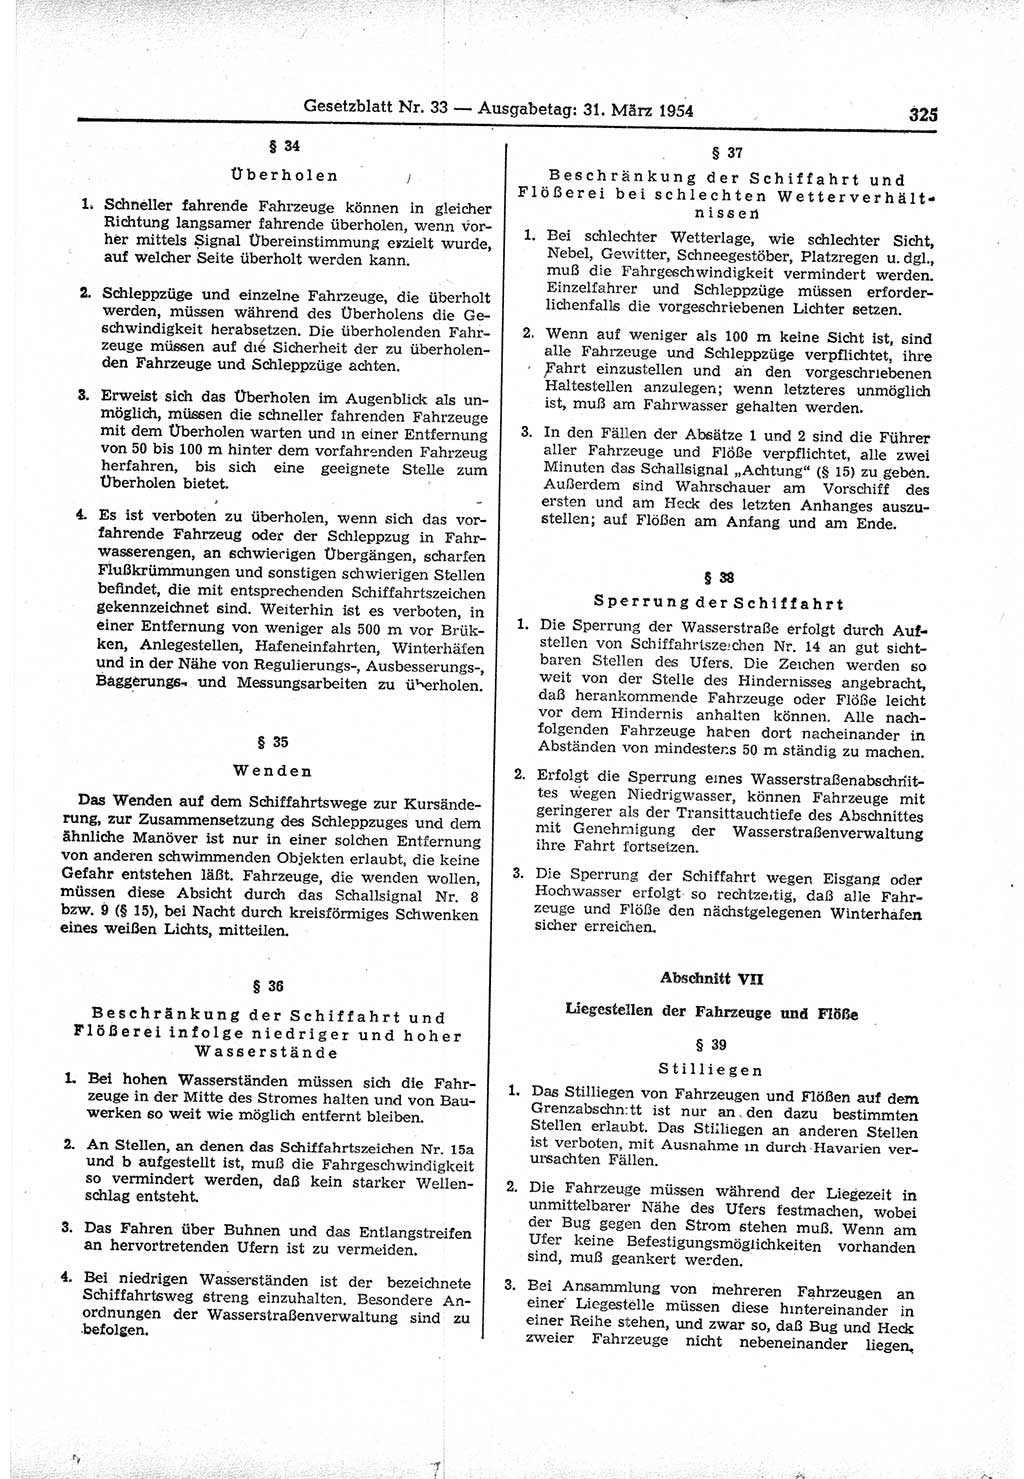 Gesetzblatt (GBl.) der Deutschen Demokratischen Republik (DDR) 1954, Seite 325 (GBl. DDR 1954, S. 325)